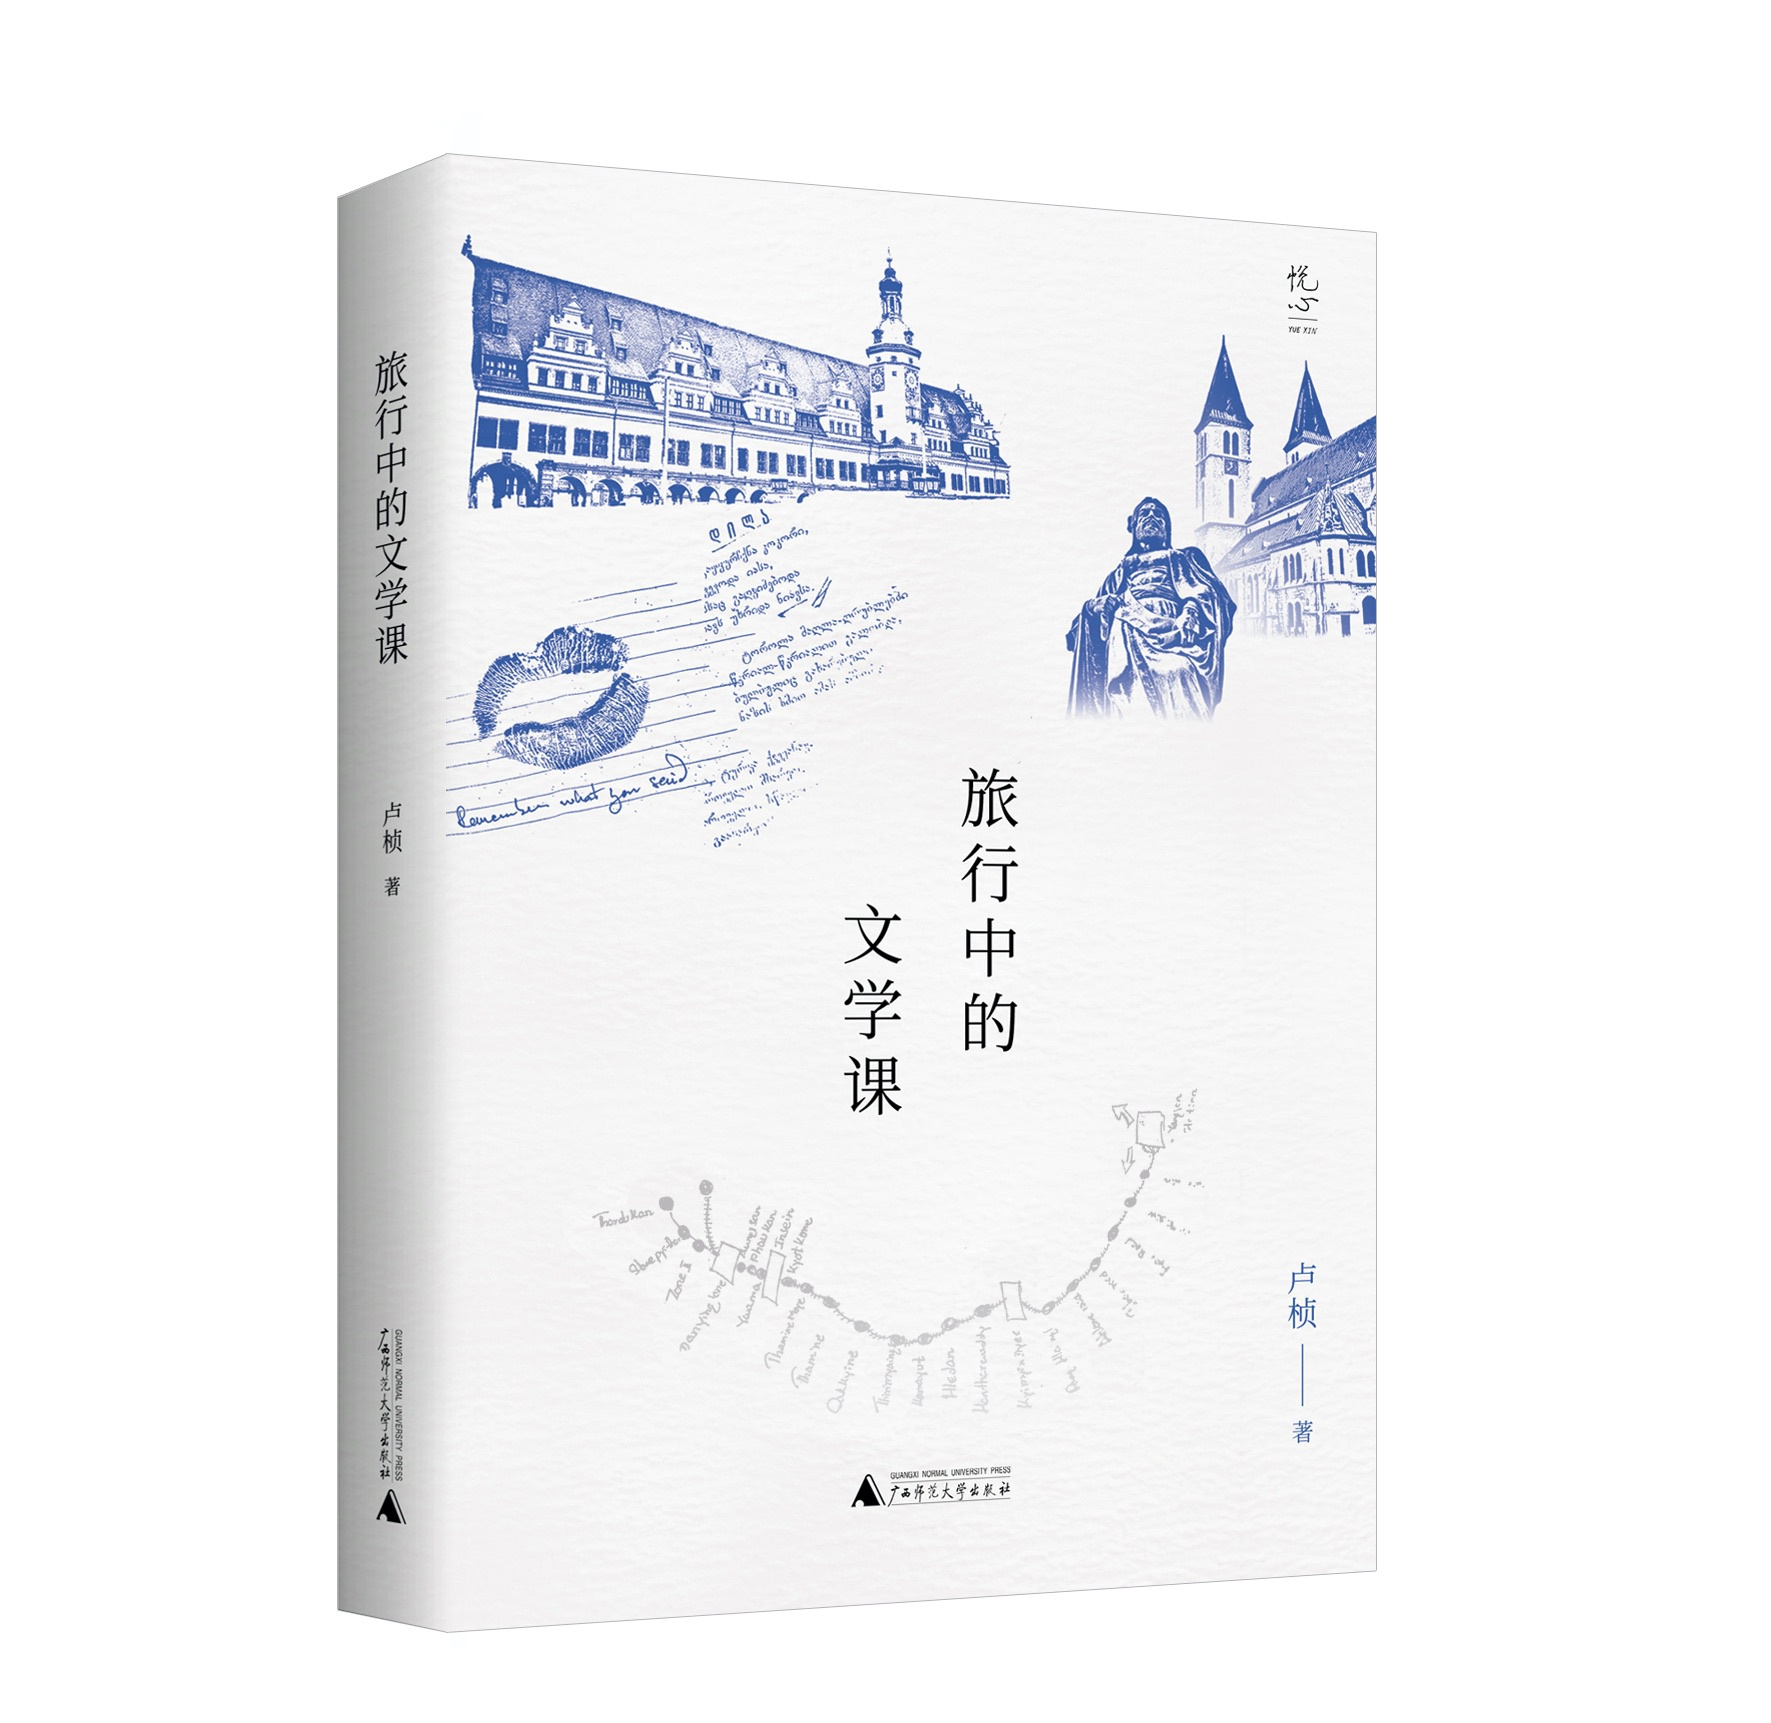 《旅行中的文学课》，卢桢著；广西师范大学出版社；2020年9月